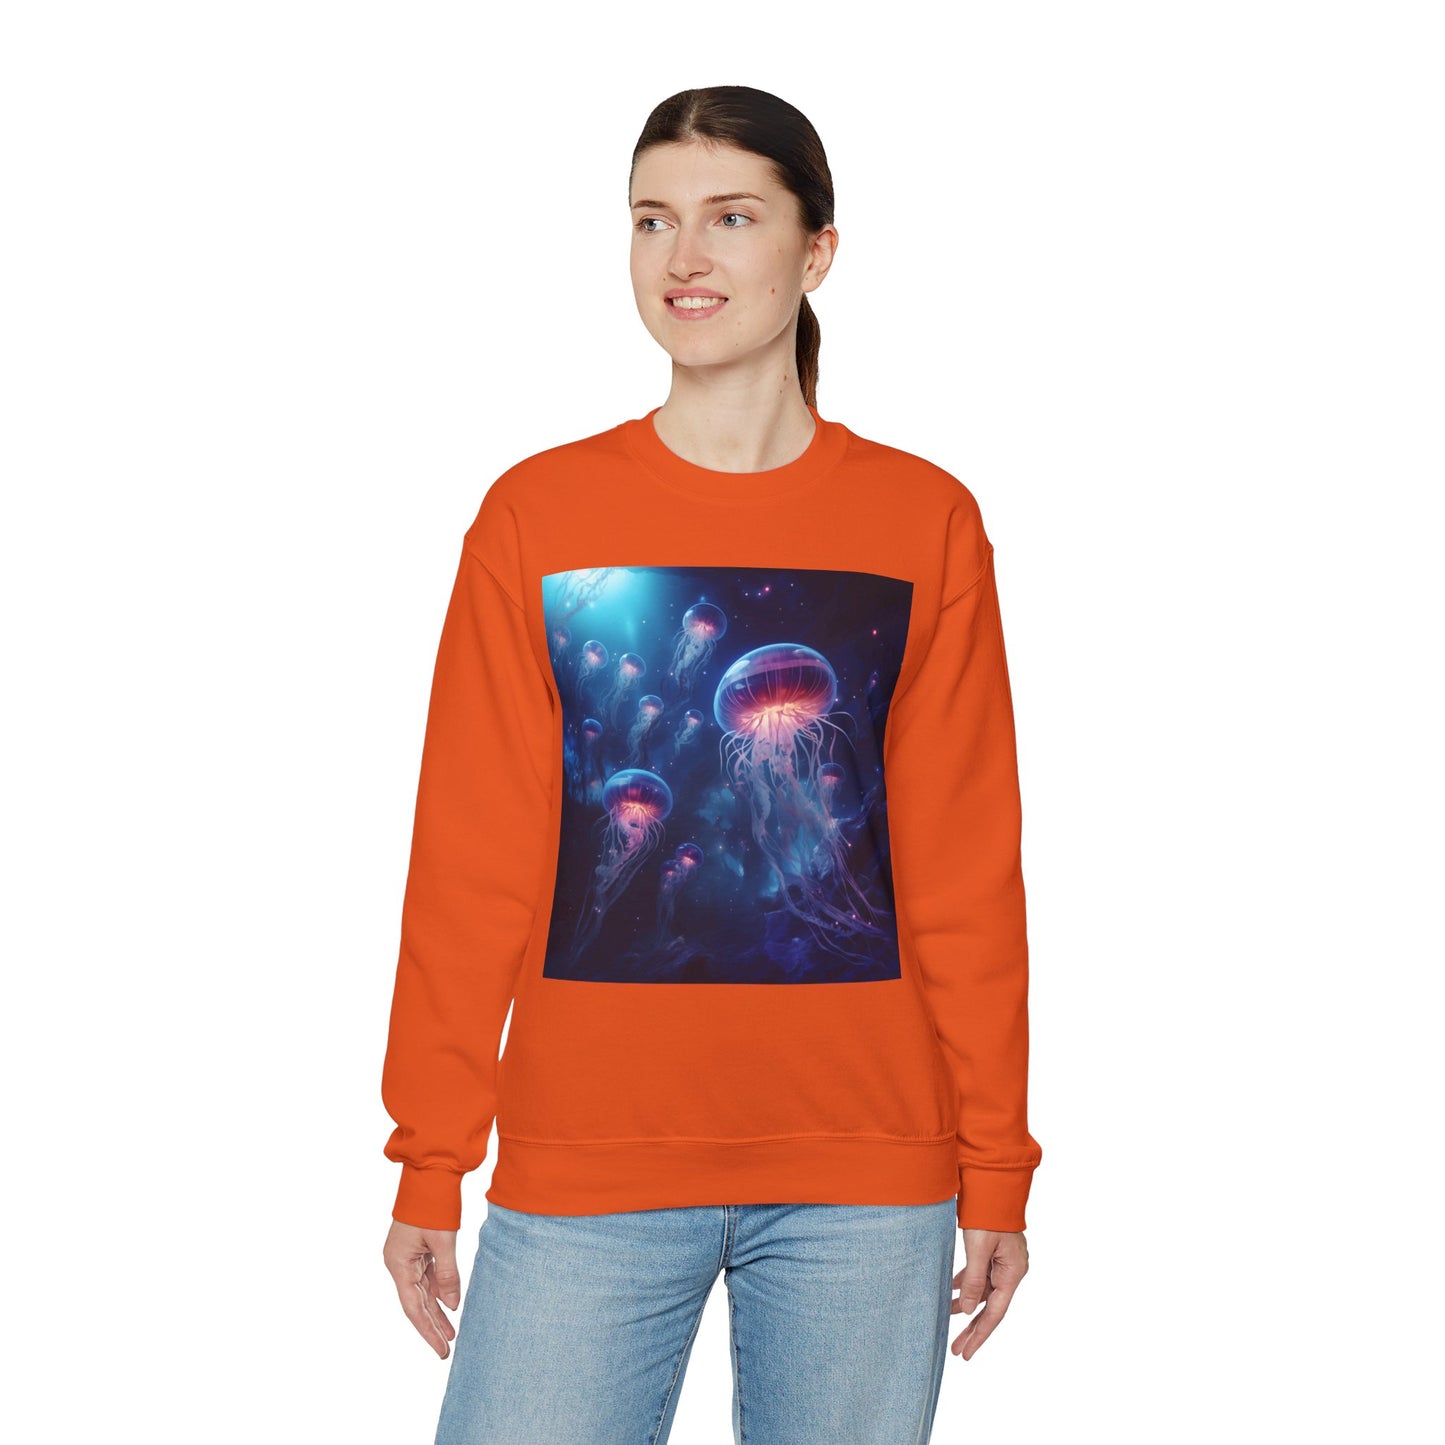 Jellyfish in Space Unisex Heavy Blend Crewneck Sweatshirt